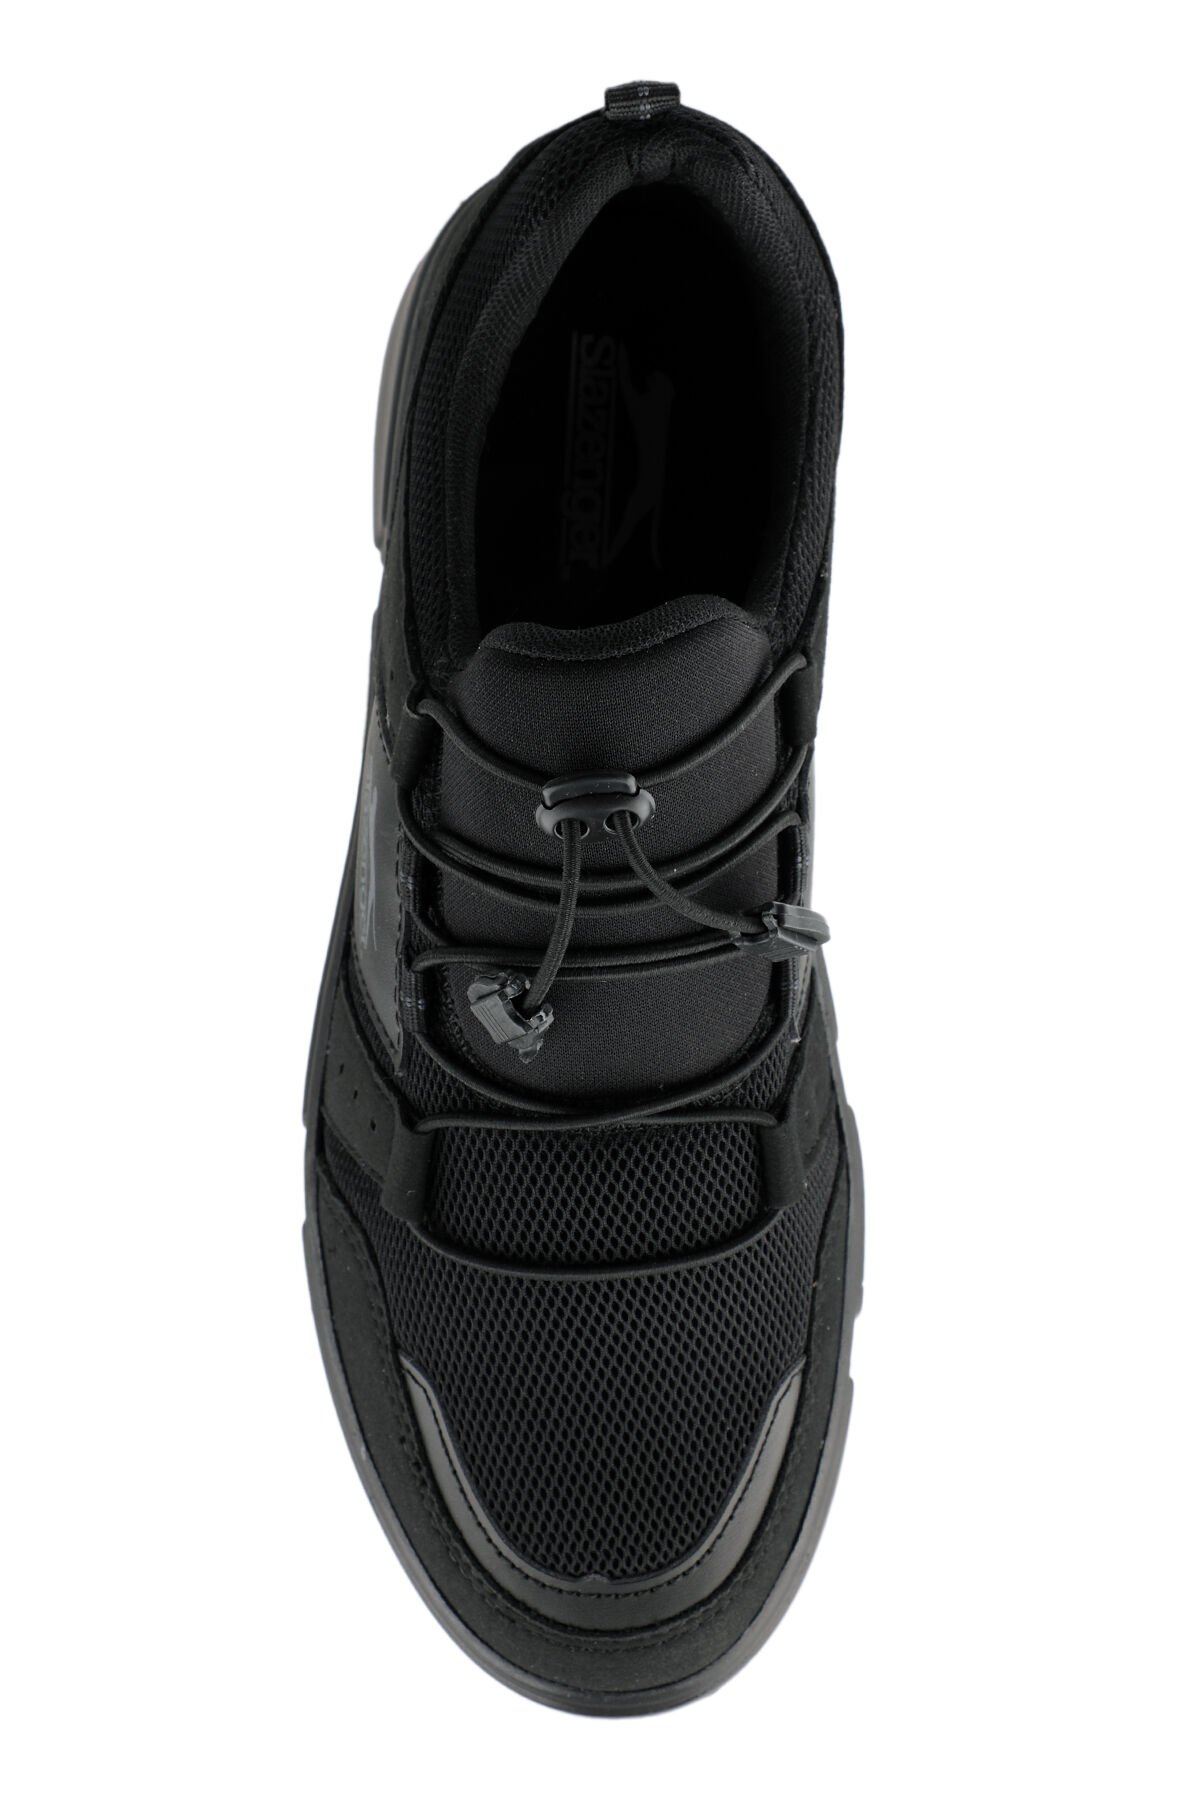 Slazenger DARLA KTN Sneaker Erkek Ayakkabı Siyah / Siyah - Thumbnail